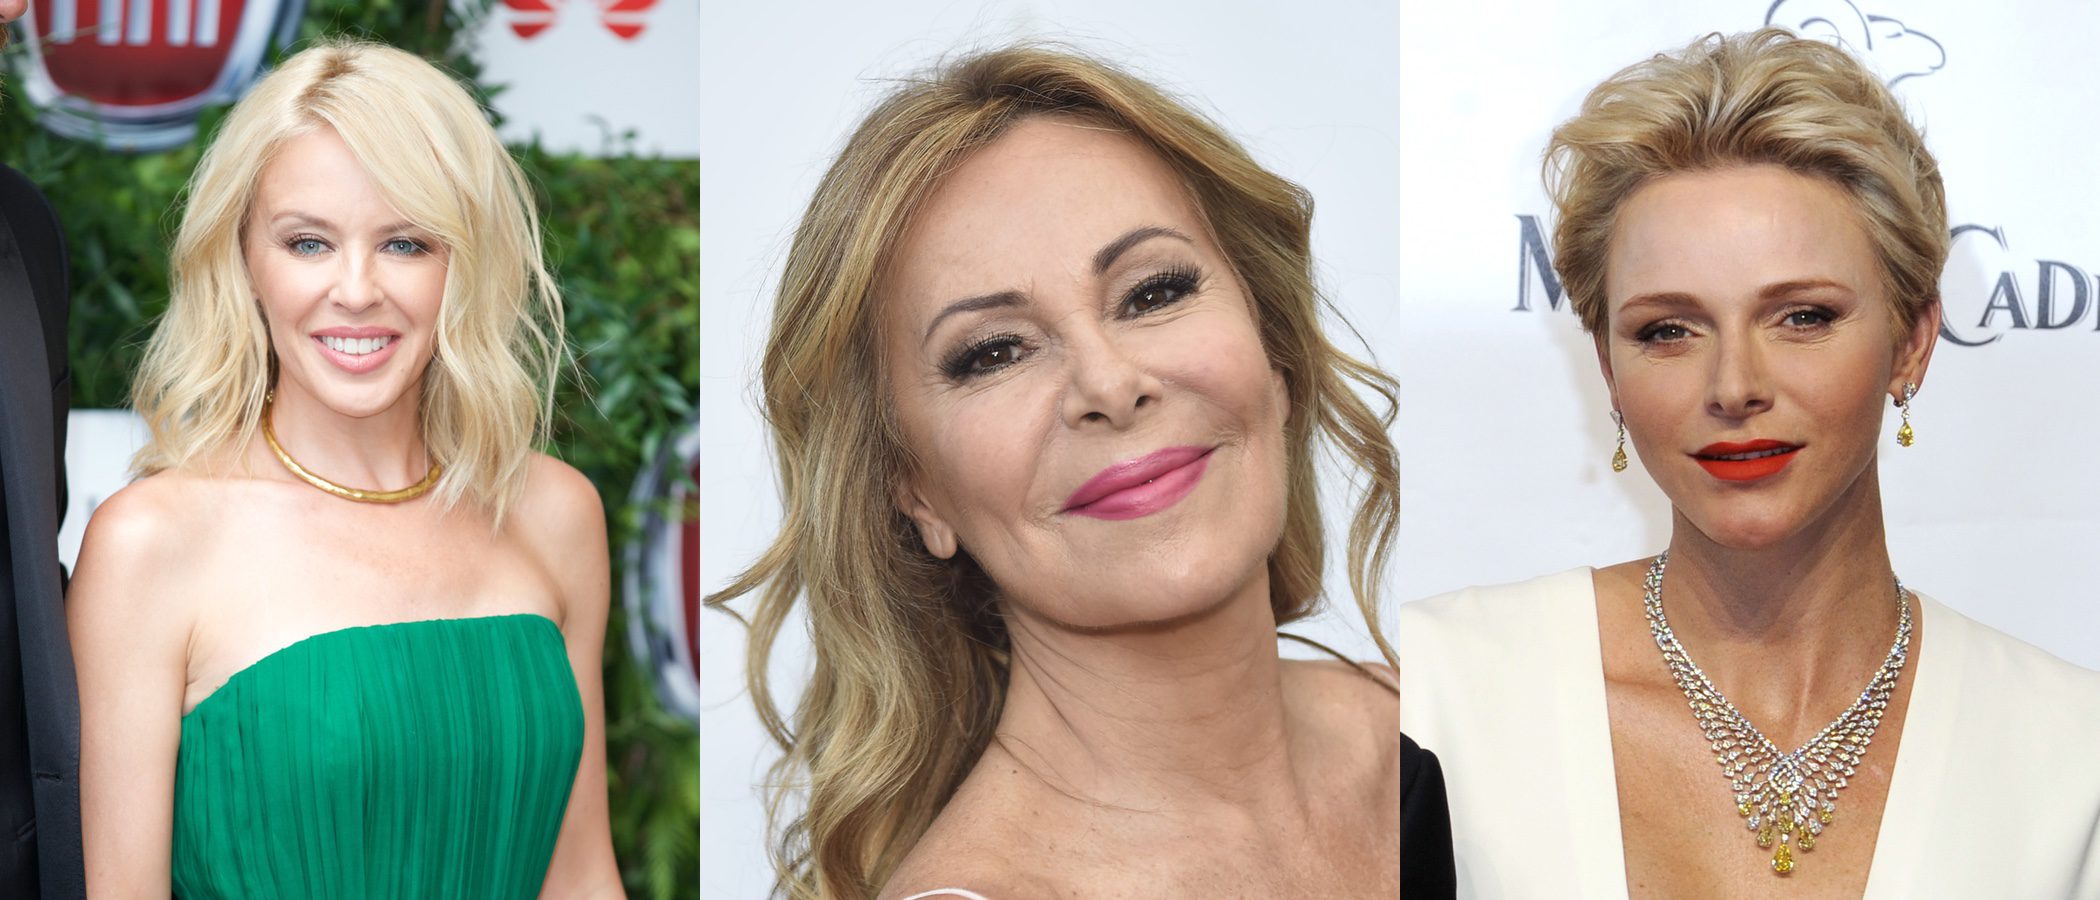 Kylie Minogue, Ana Obregón y Charlene de Mónaco, el trío beauty de la semana